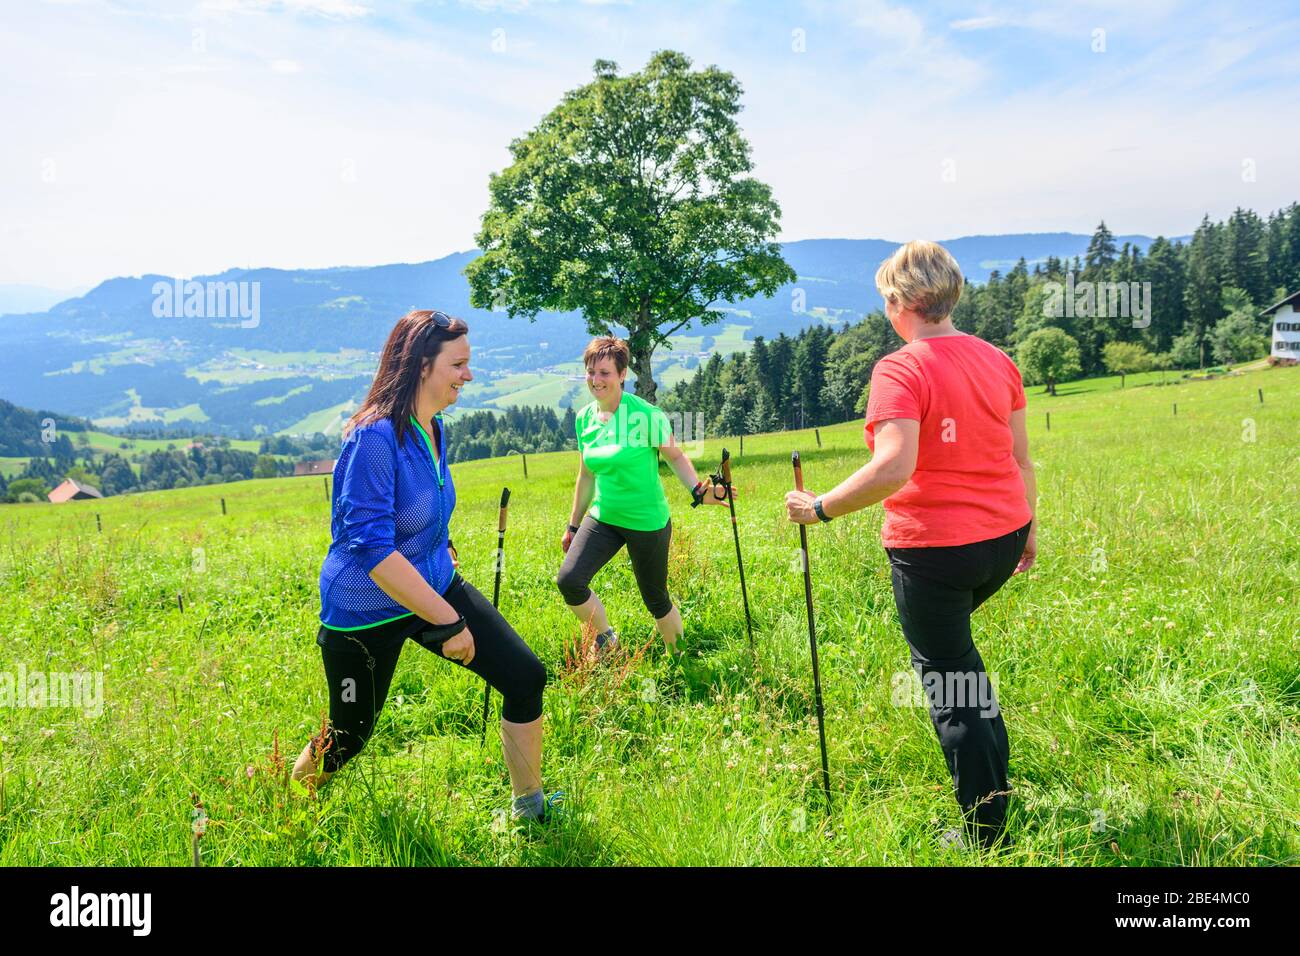 Entrenamiento físico en naturaleza verde con ejercicios de marcha nórdica Foto de stock